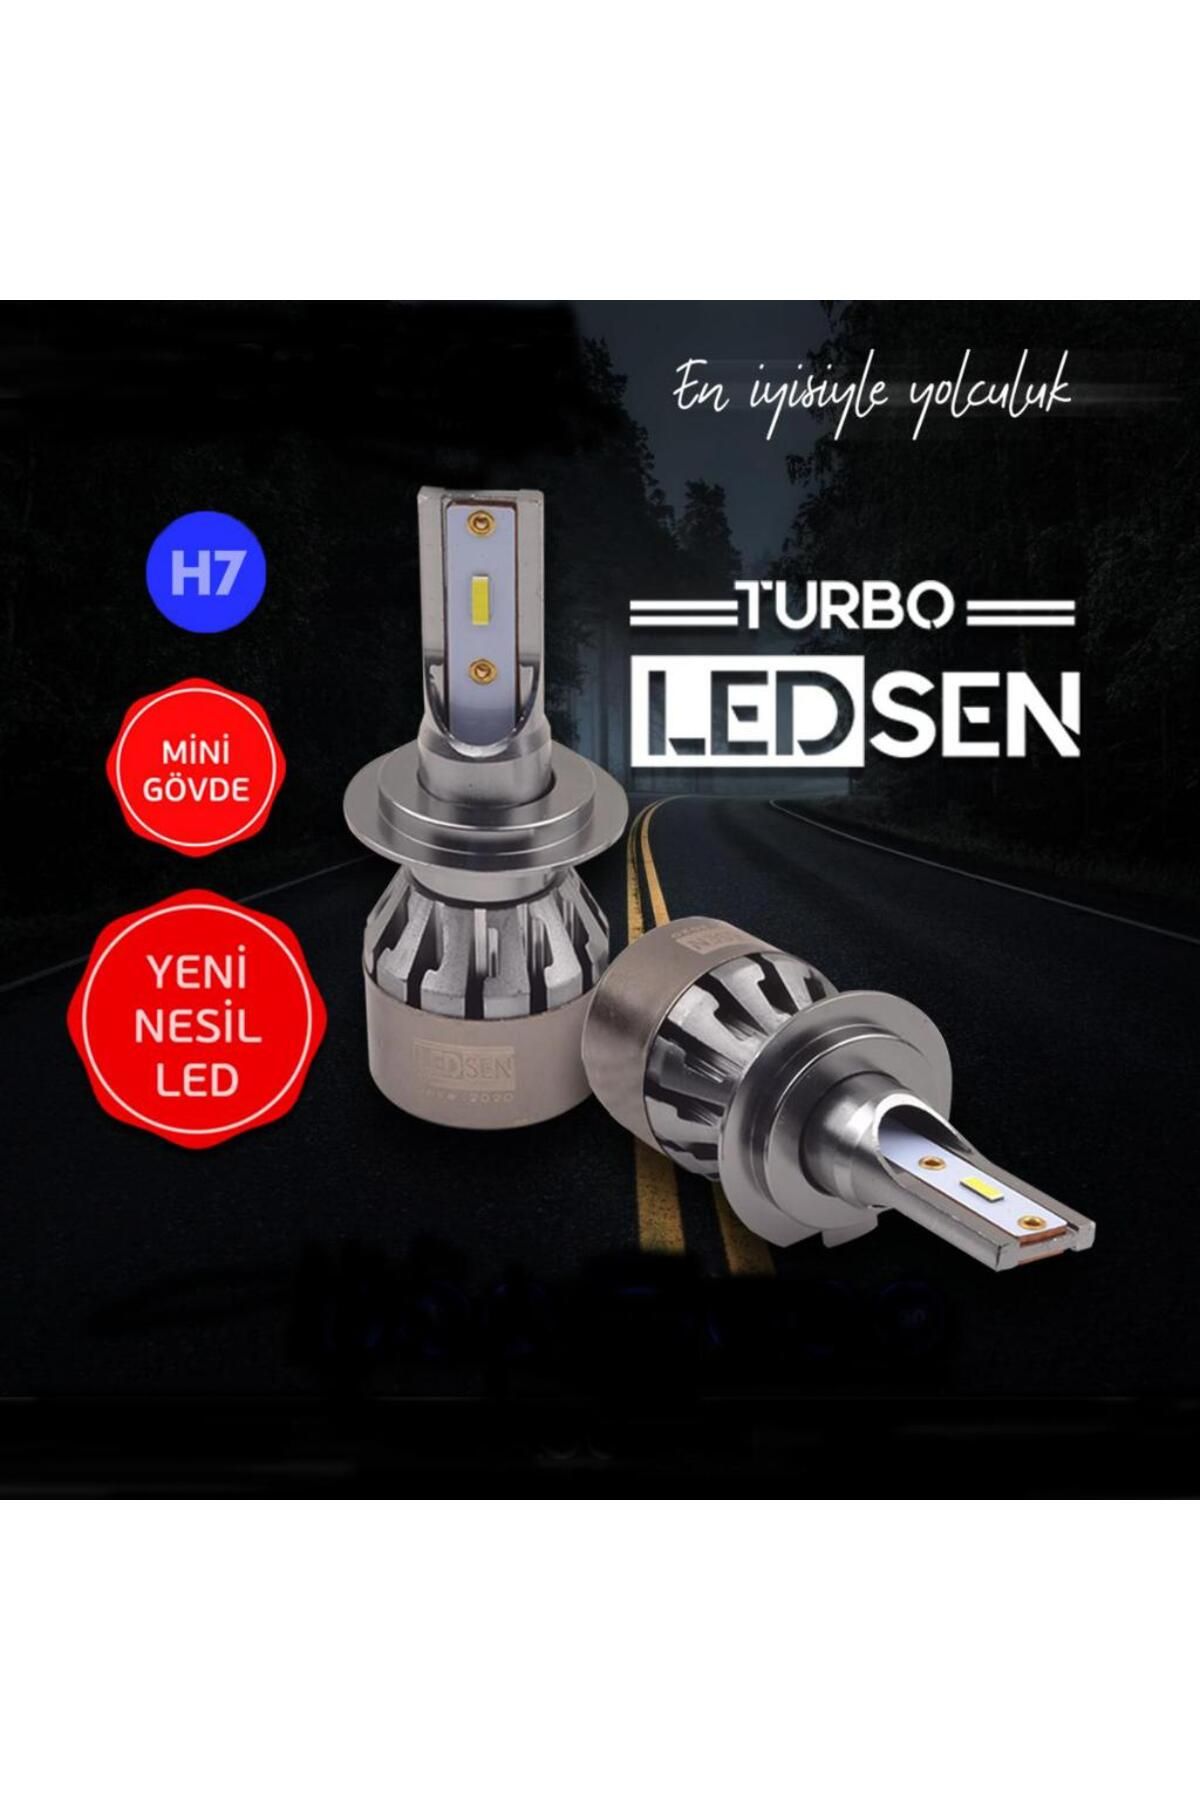 KOTO Ledsen H7 LED Xenon Turbo Serisi 12V Mini Gövde Yeni Nesil LED